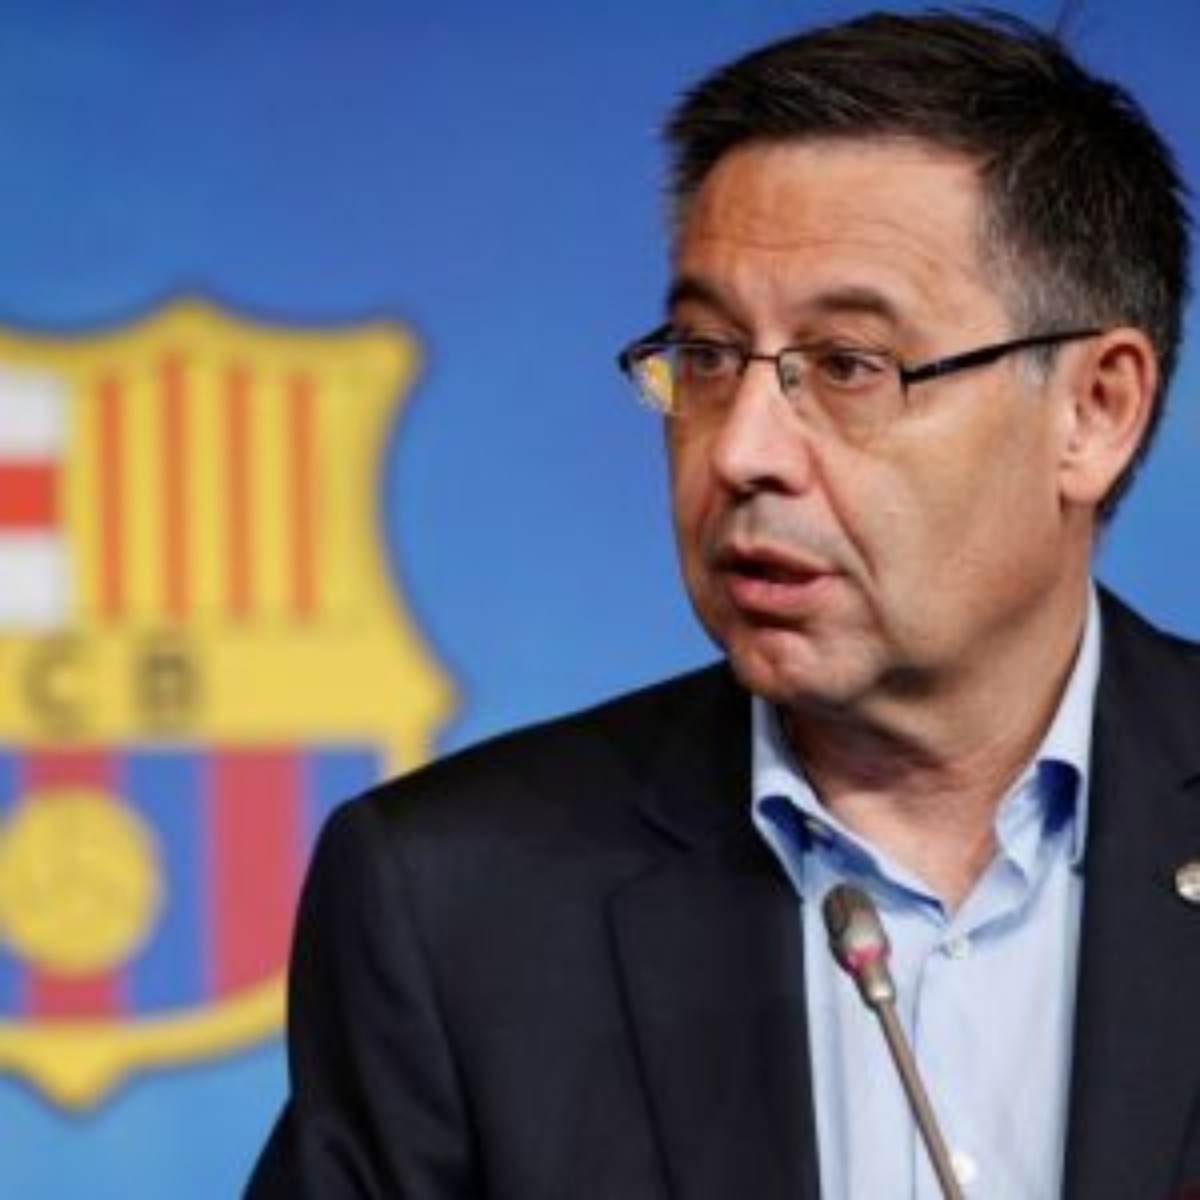 La police se rend au siège du FC Barcelone, des documents saisis